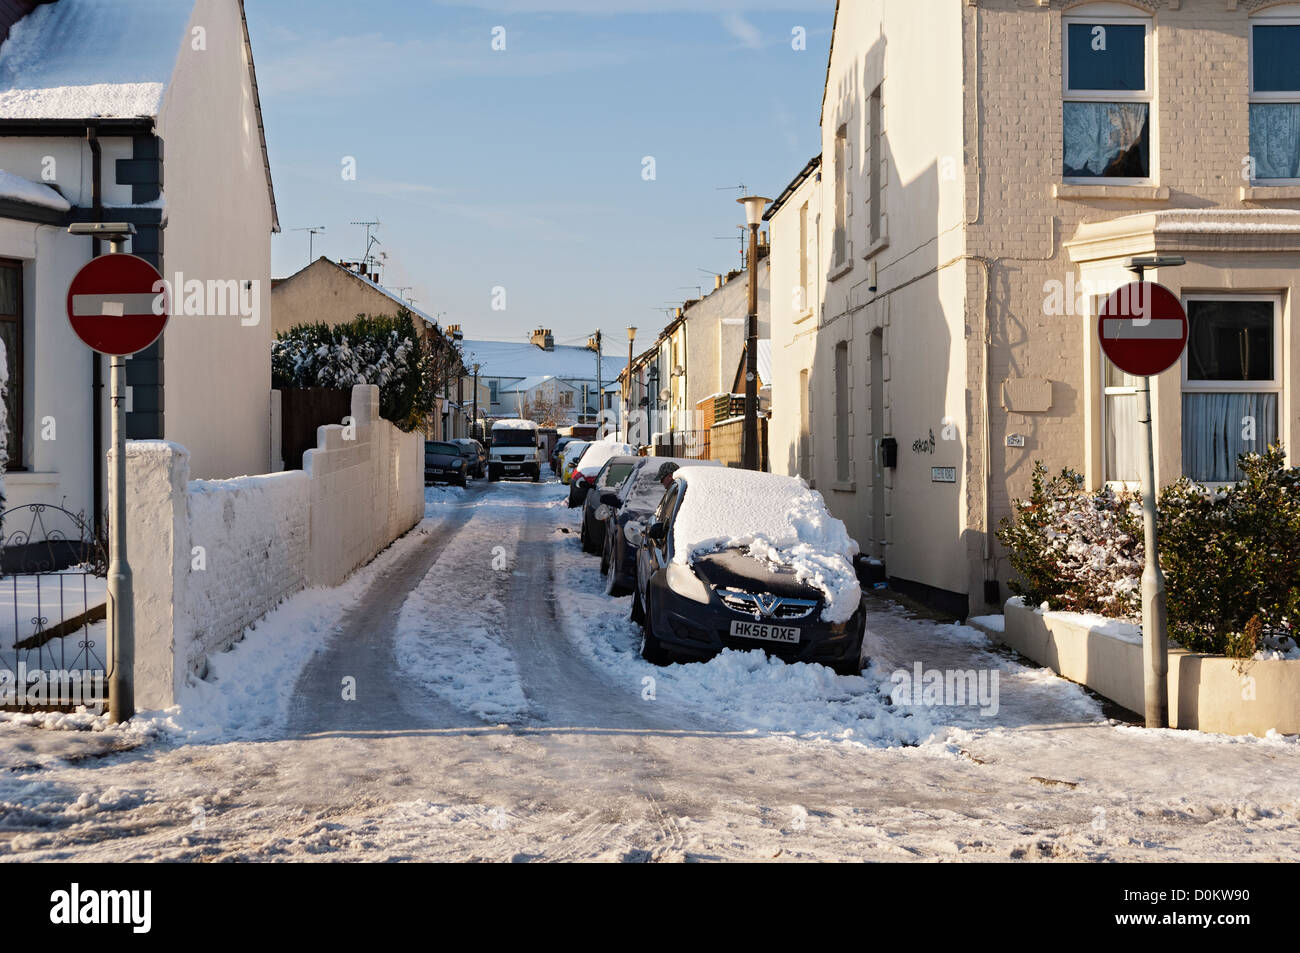 La neige et les véhicules à Gillingham, dans le Kent. Banque D'Images